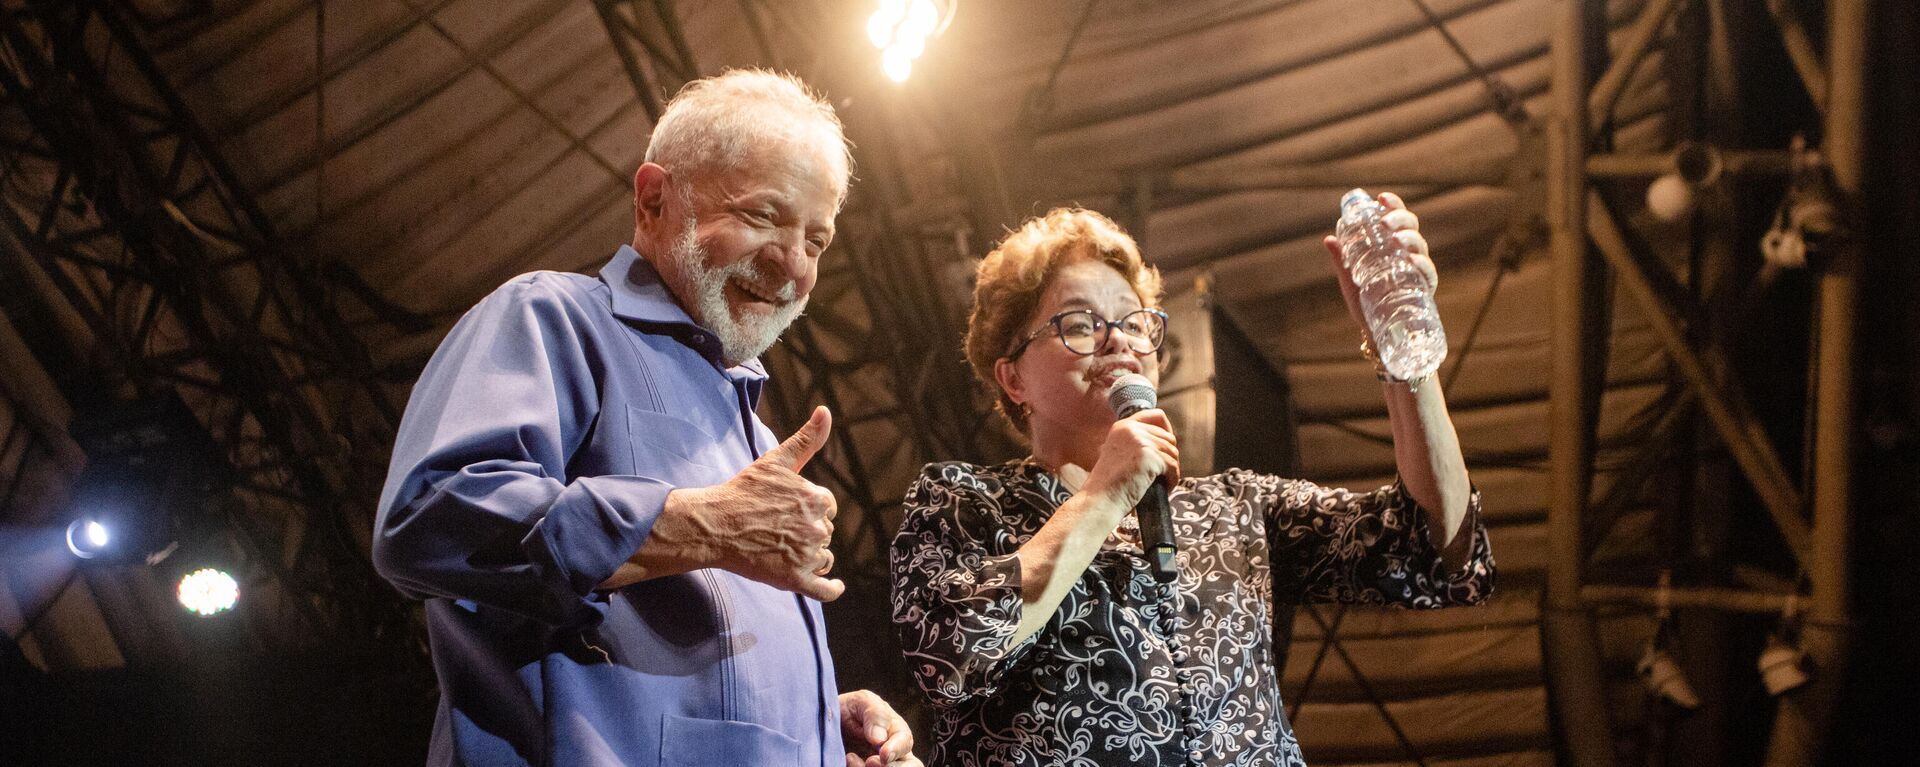 Ex-presidentes Luiz Inácio Lula da Silva e Dilma Rousseff (PT) durante evento no Rio de Janeiro, 18 de dezembro de 2019. - Sputnik Brasil, 1920, 27.04.2022